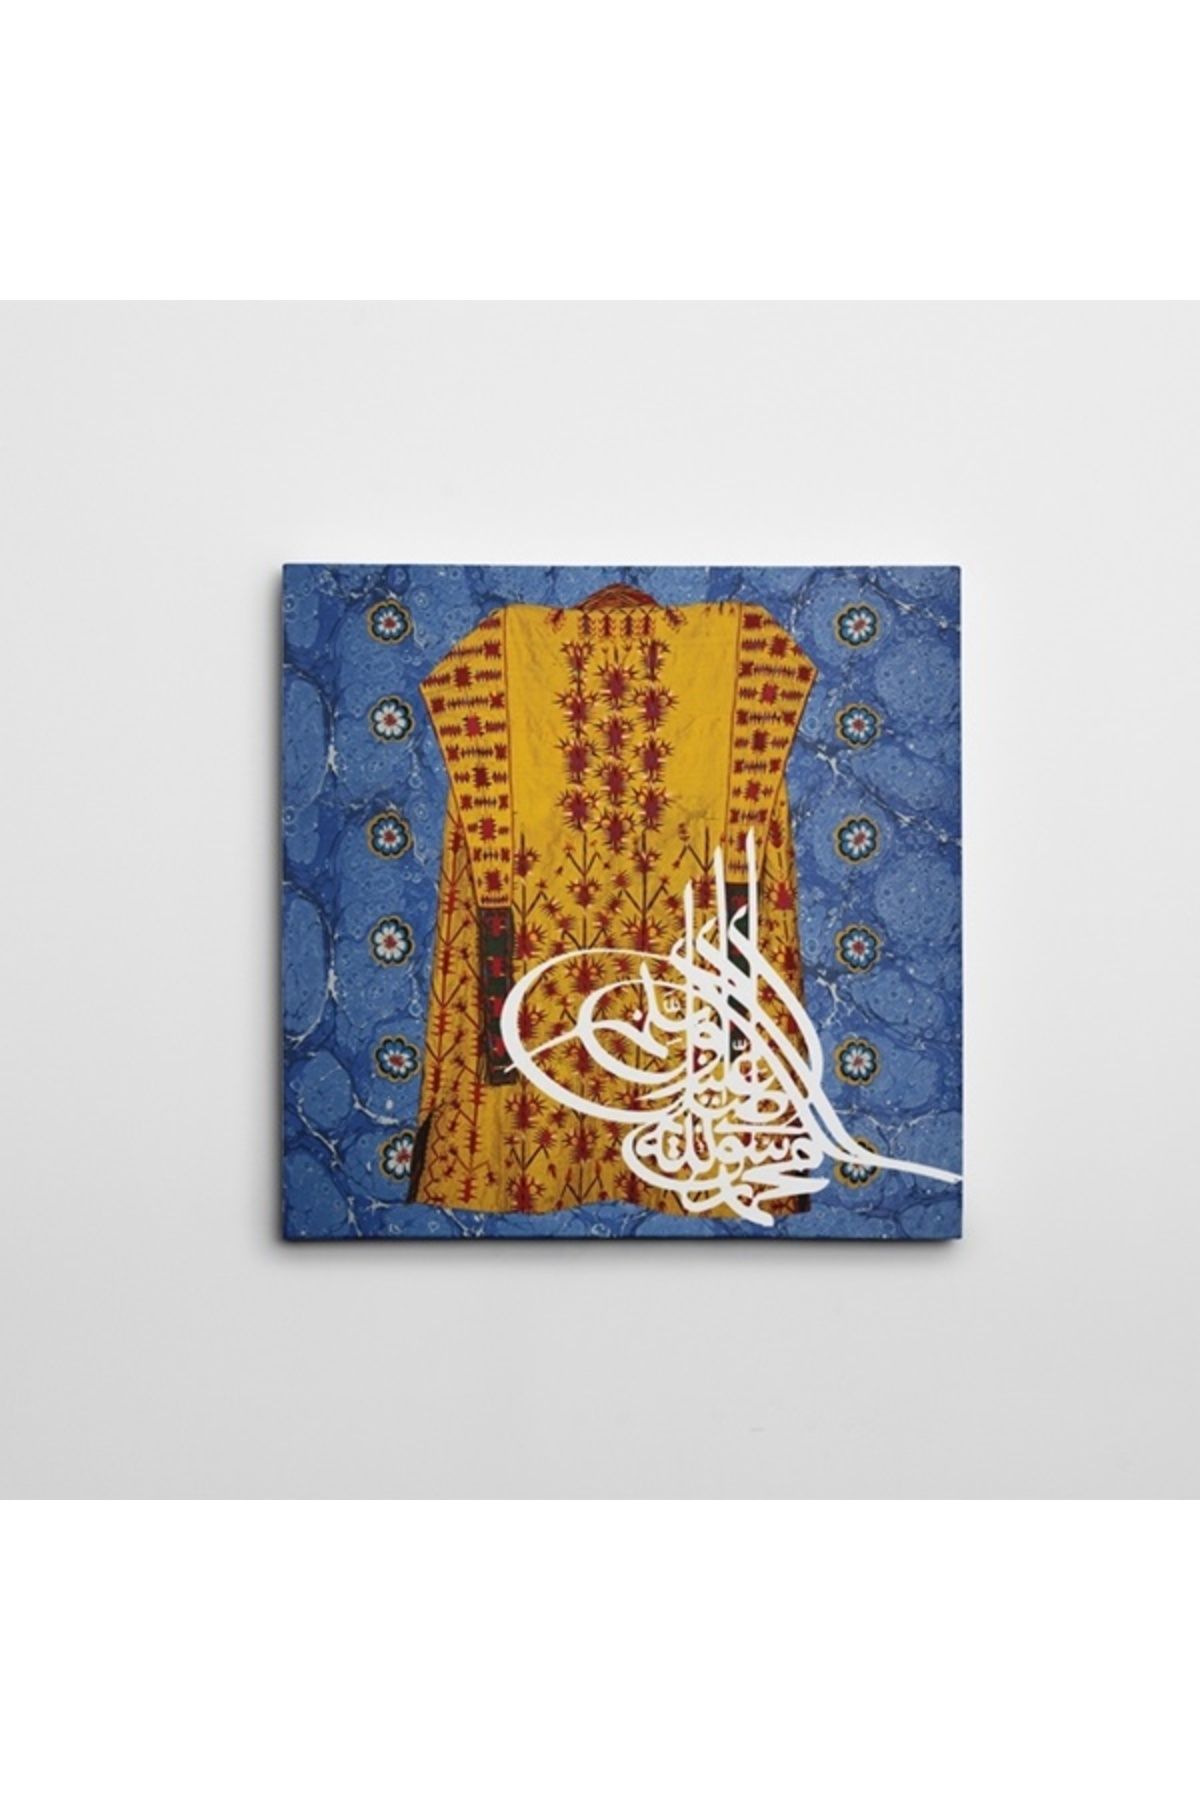 artefoni Kaftan ve Ebru Kare Dekoratif Kanvas Tablo 40 x 40 CM